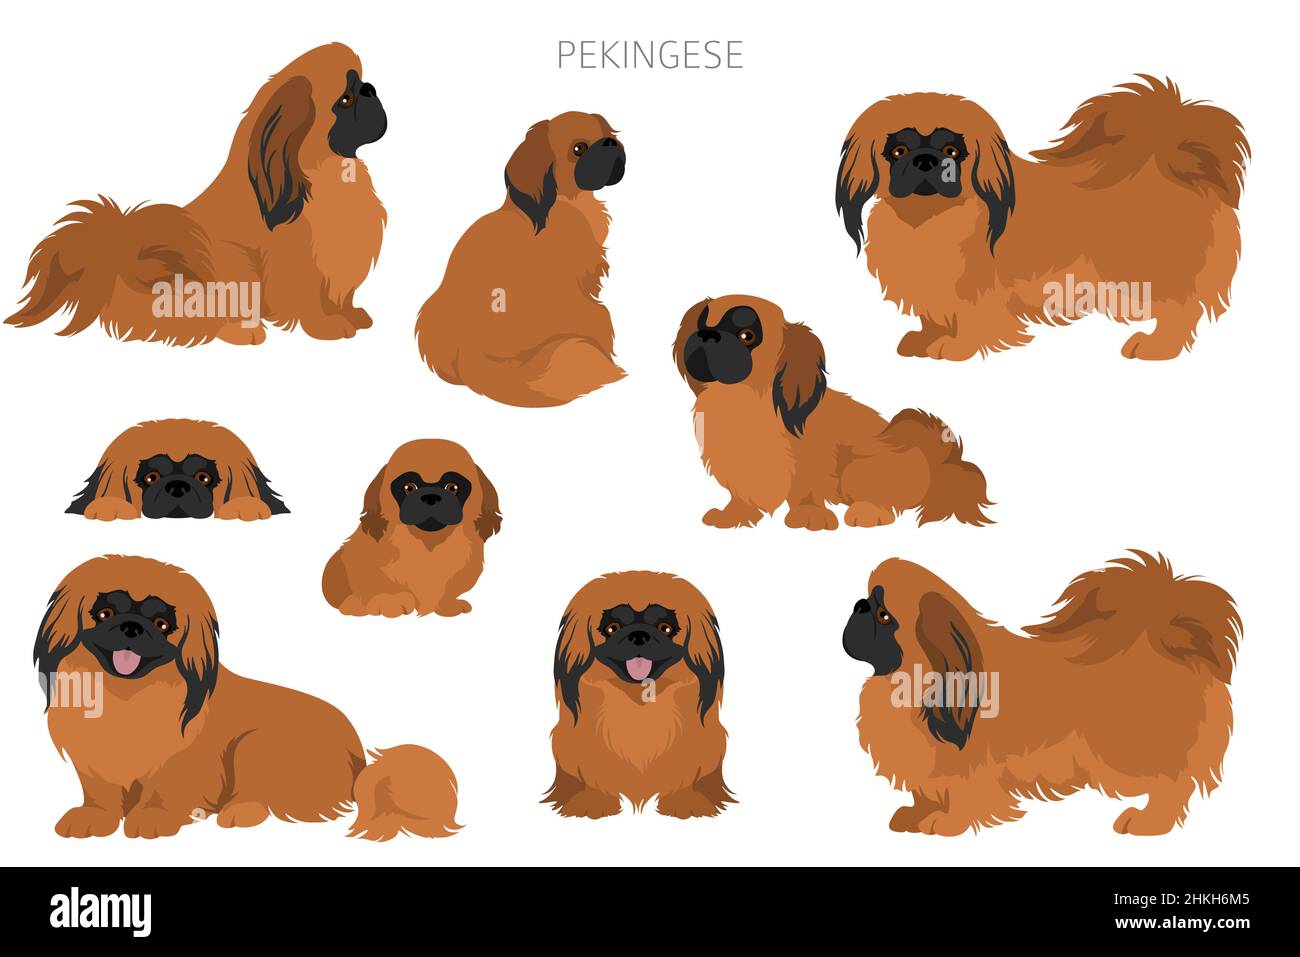 Pekingese Hund Clipart. Verschiedene Posen, Fellfarben eingestellt. Vektorgrafik Stock Vektor